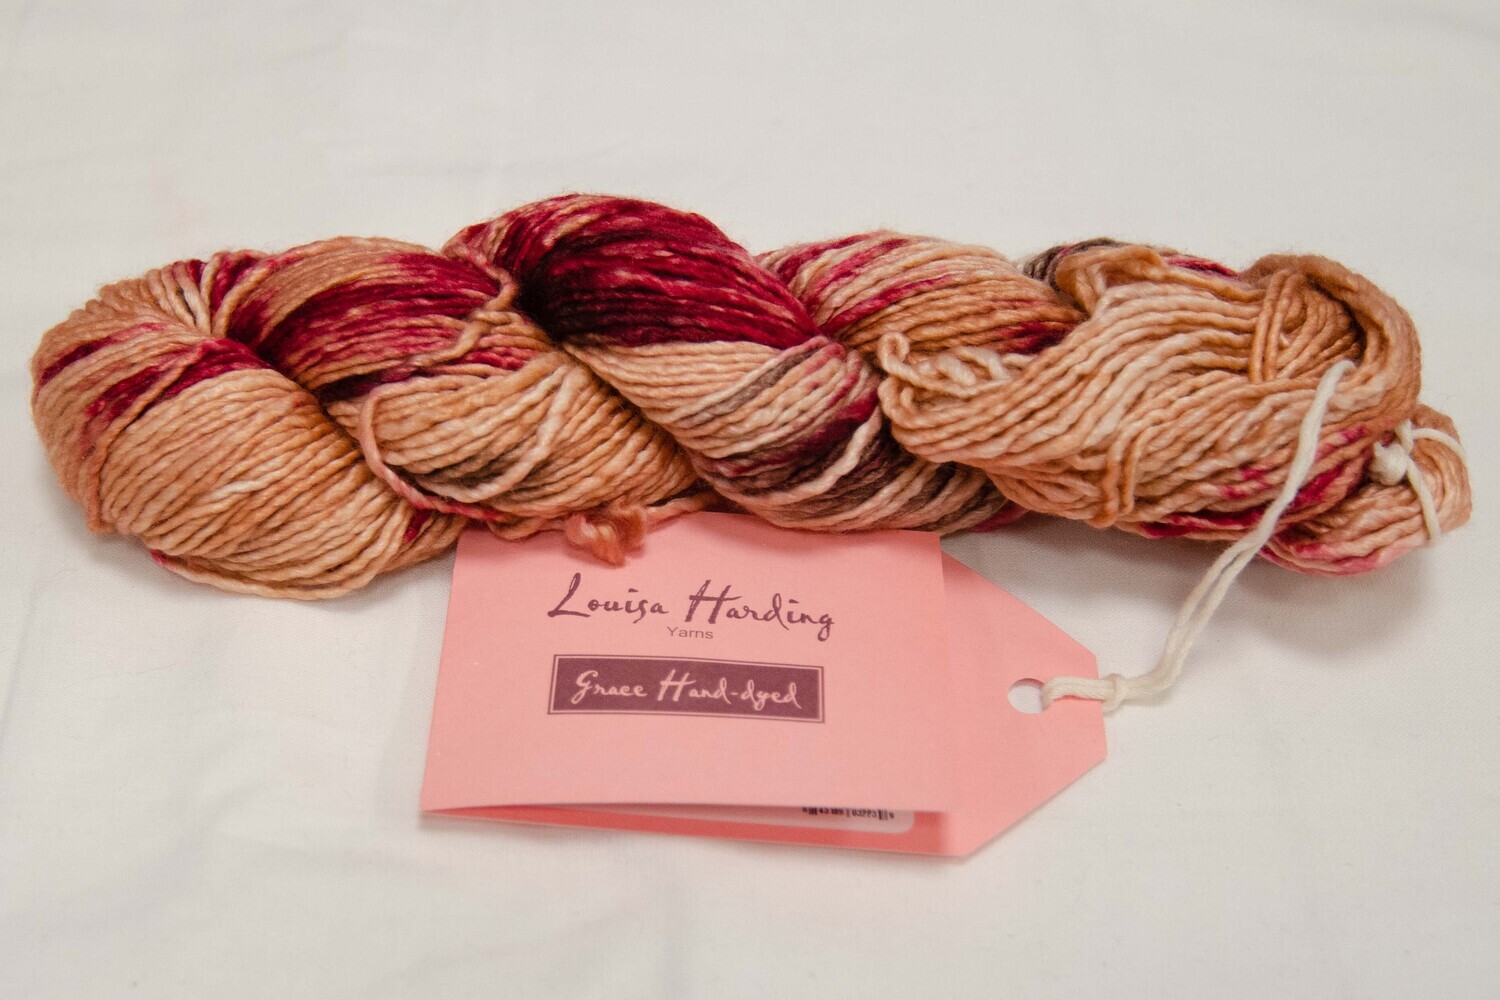 Louisa Harding - Grace handdyed garn - nr 19 - melerad rosa/röd/brun